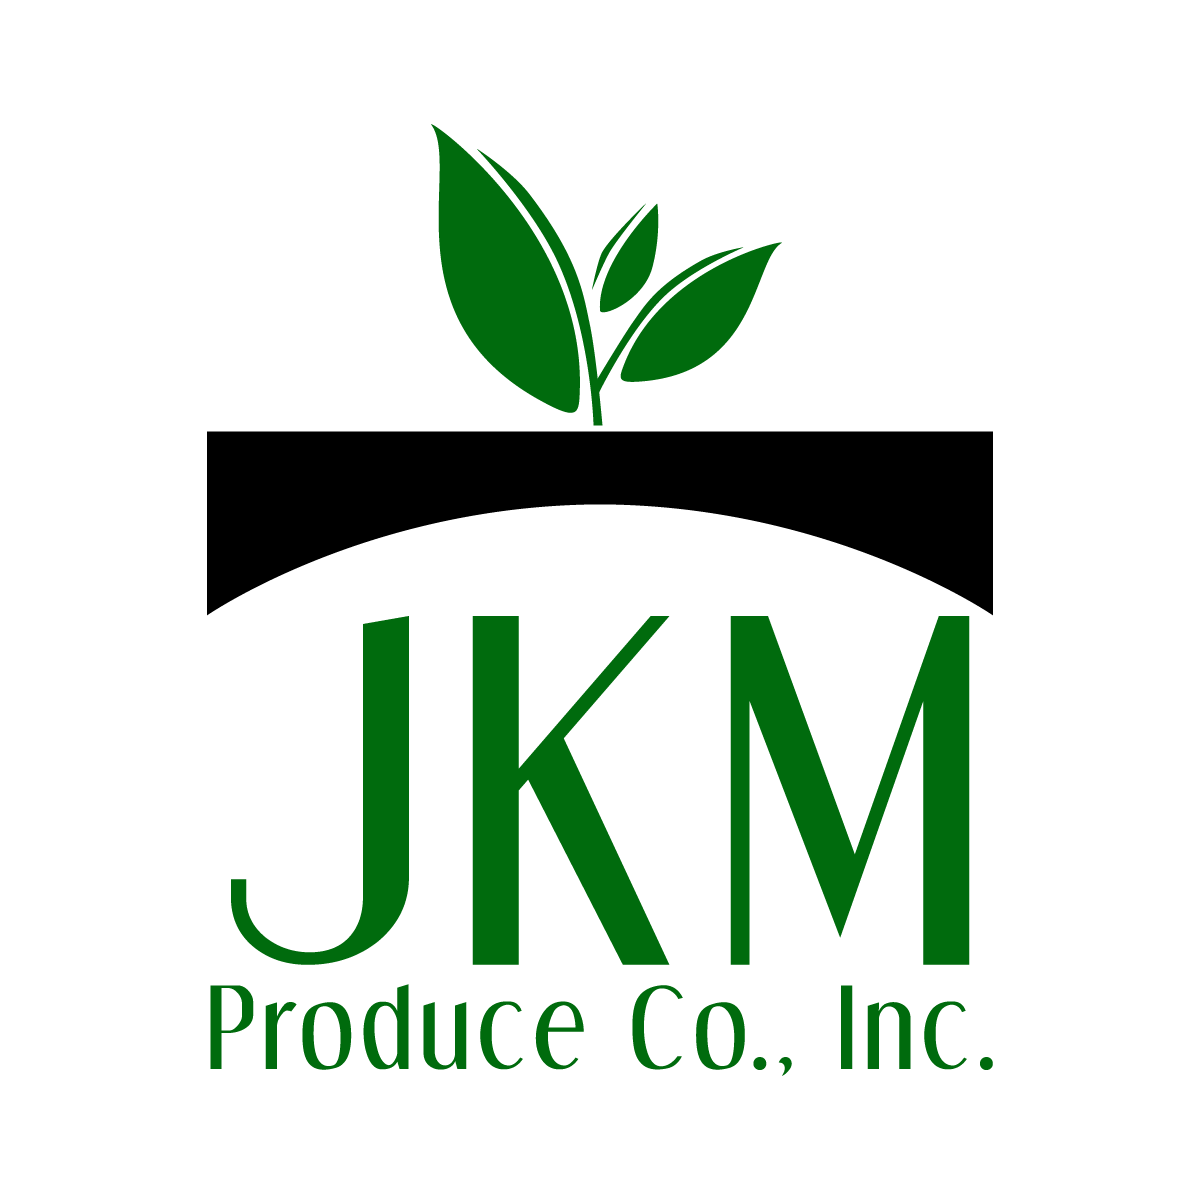 JKM Produce